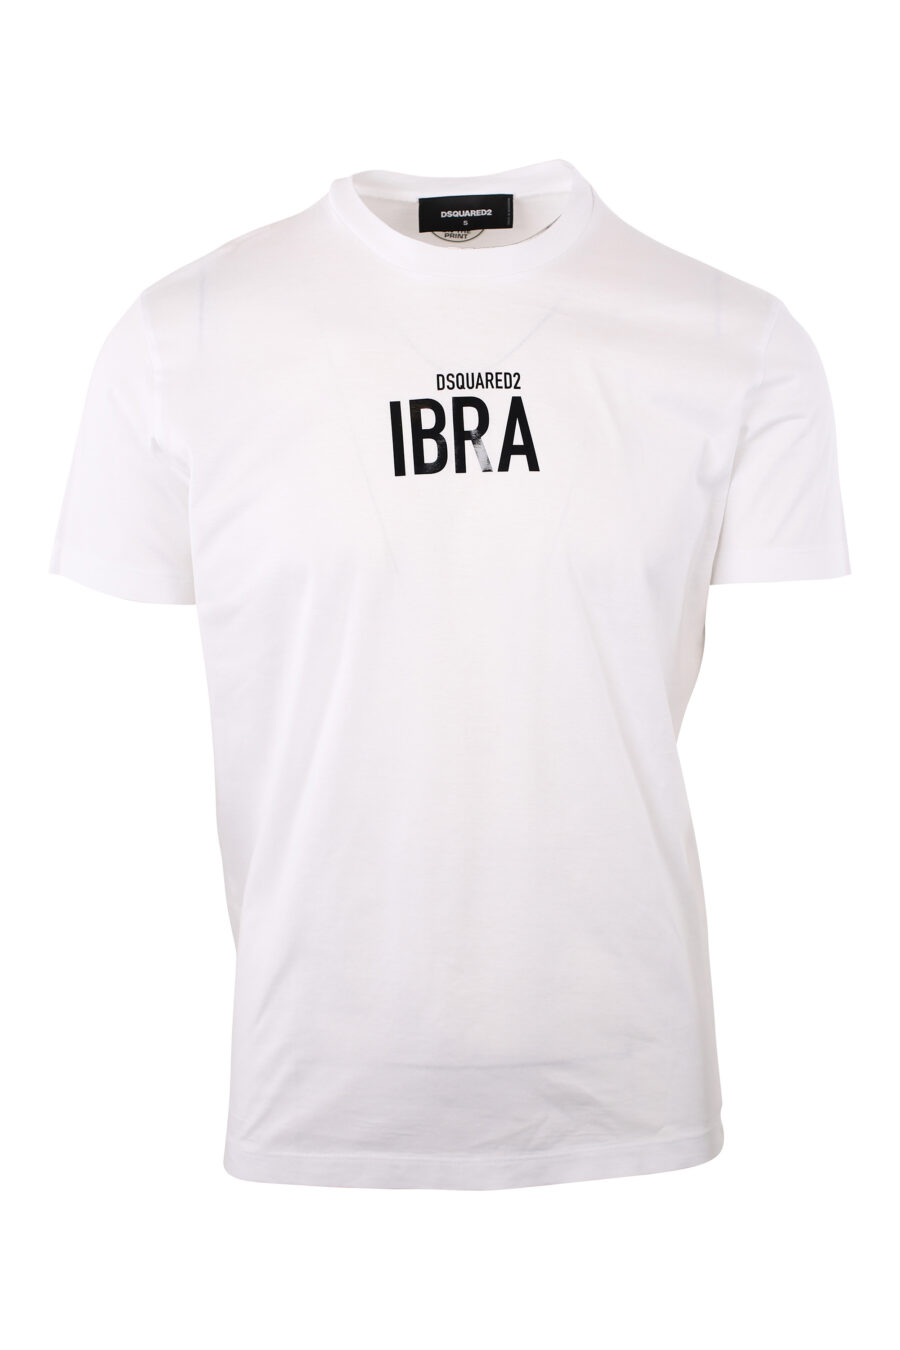 Weißes T-Shirt mit schwarzem "ibra"-Logo - IMG 2001